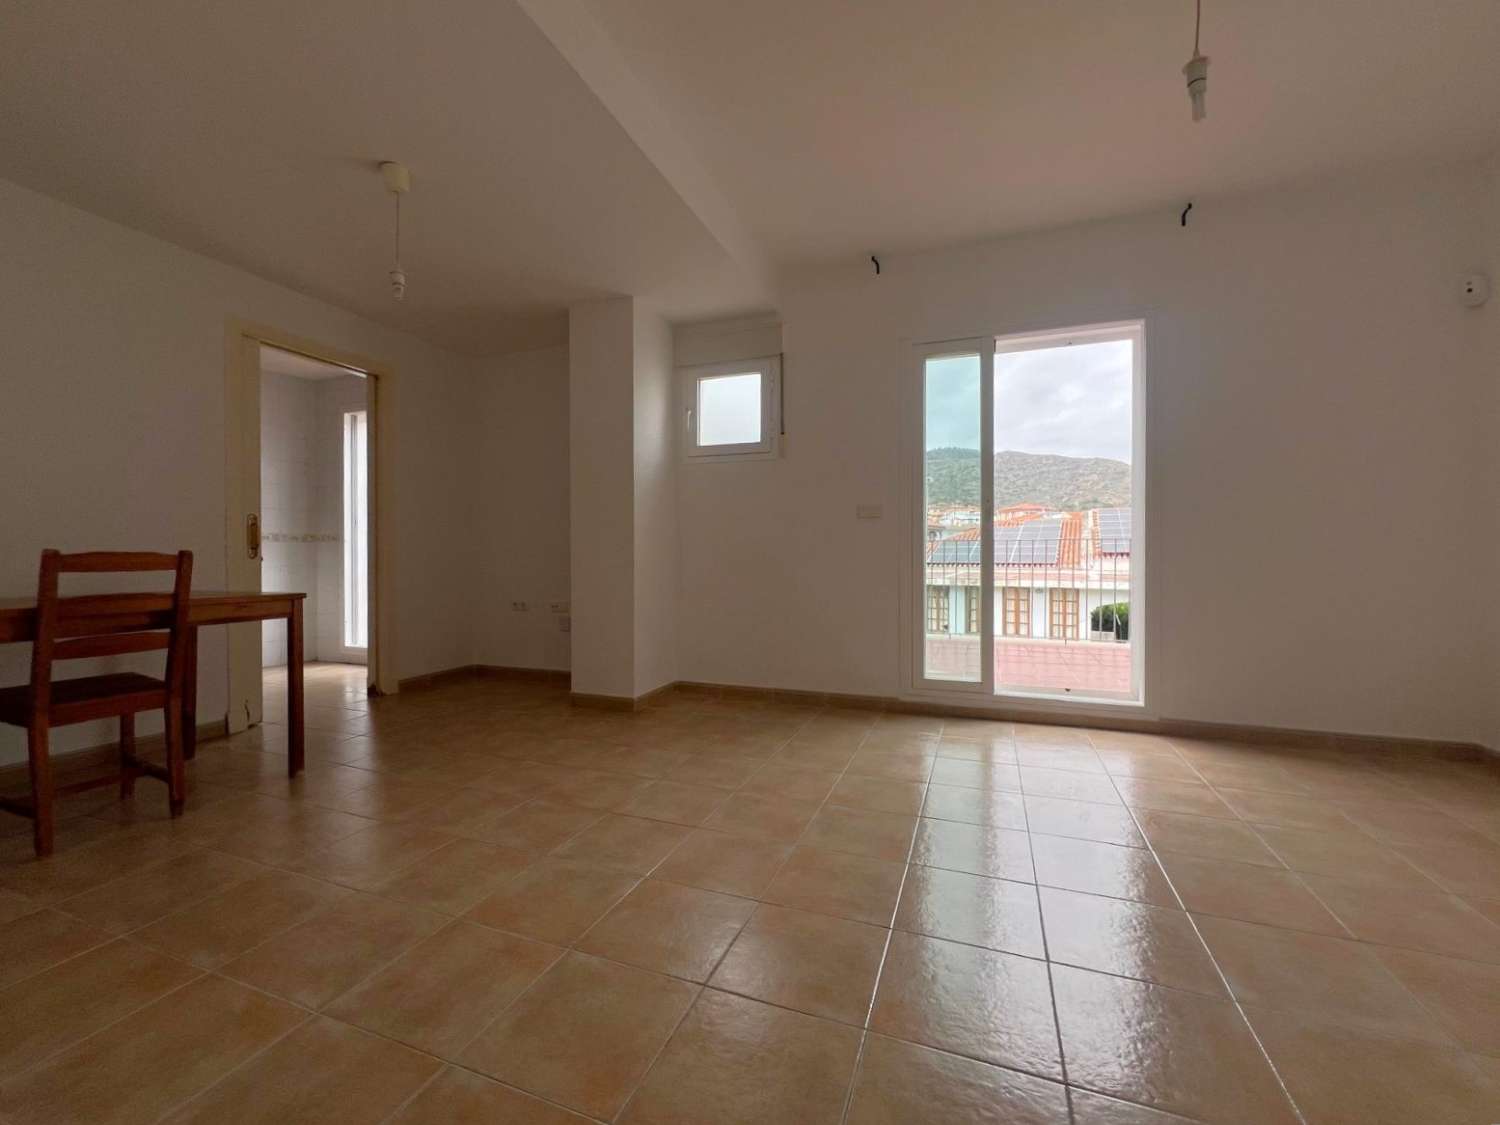 Duplex for sale in Lobres, Salobreña